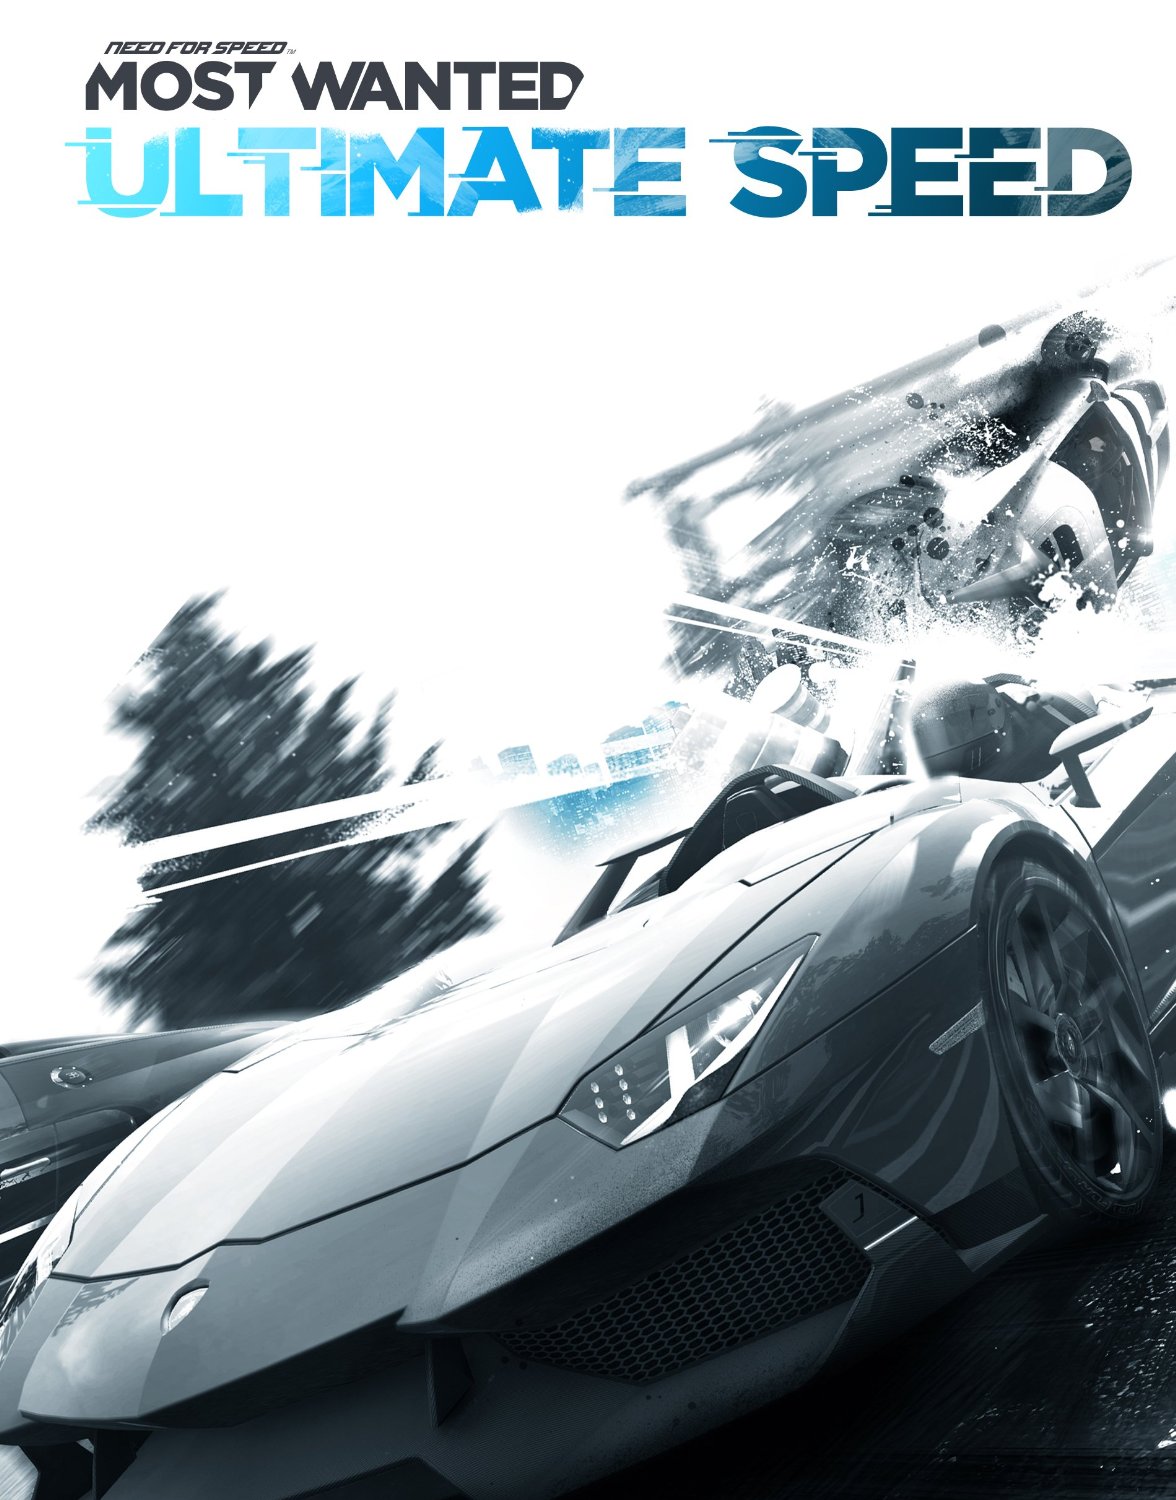 NFS - Need for Speed Most Wanted (2012) - Pakiet największej prędkości